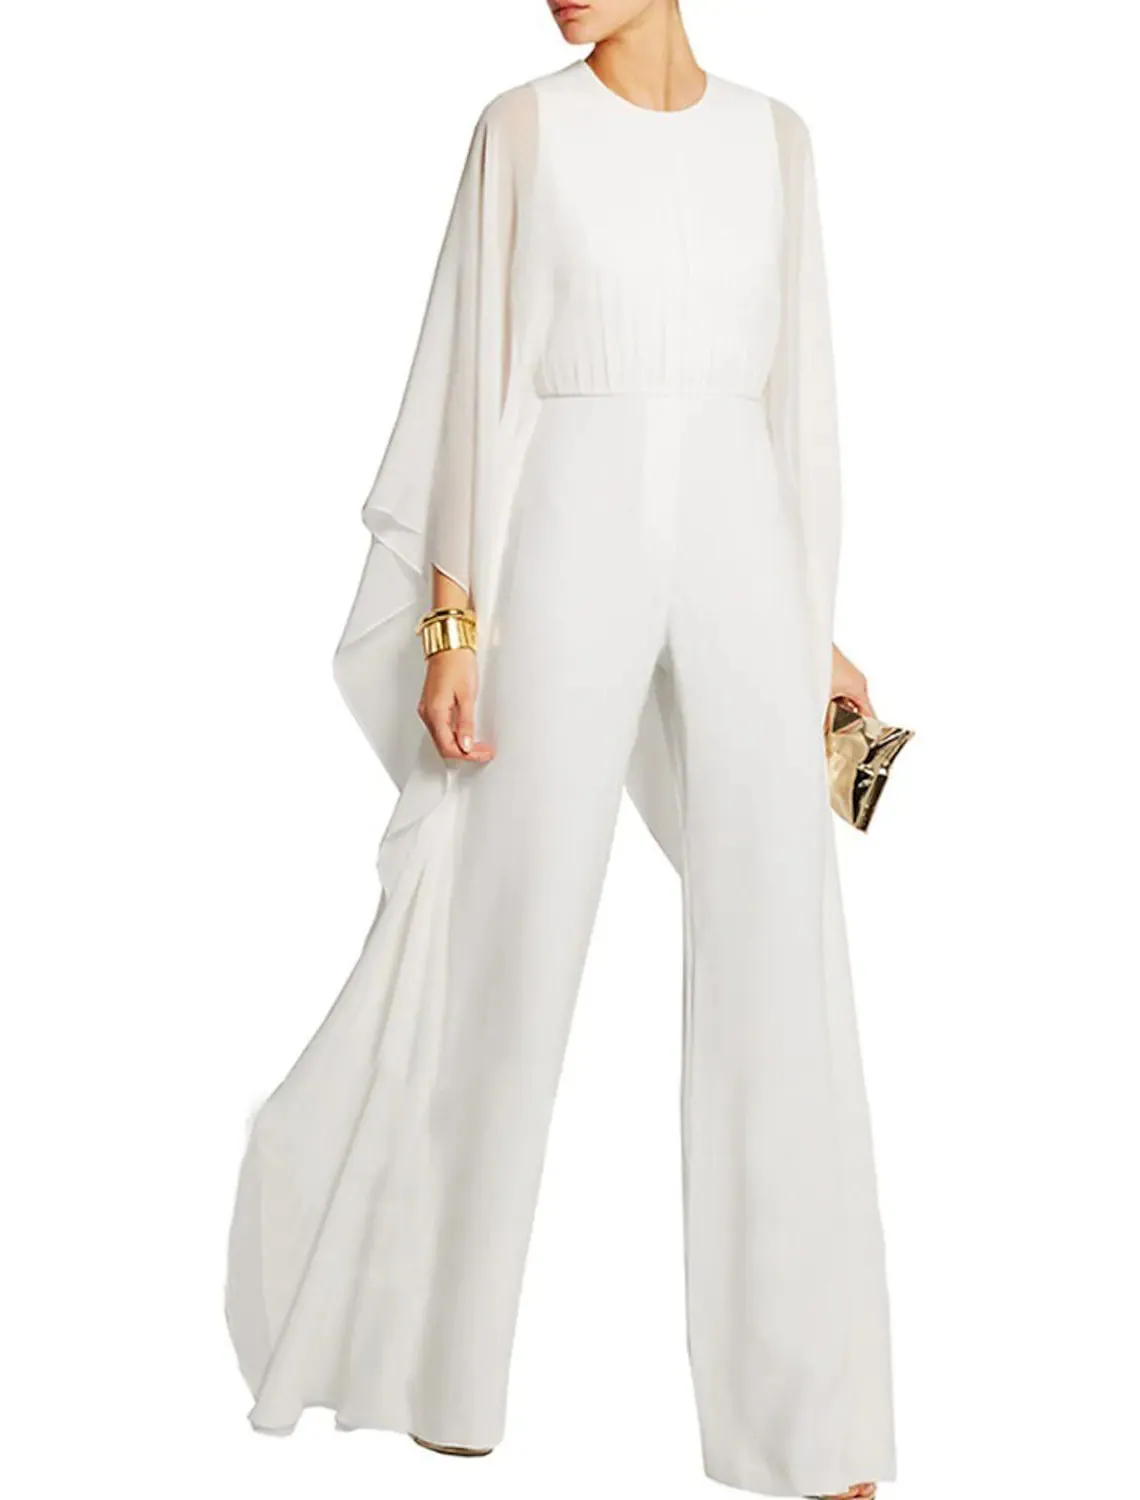 Элегантная шифоновая мать брюк -брюки костюмы Империя Талия Женщины Компания Свадебное гость